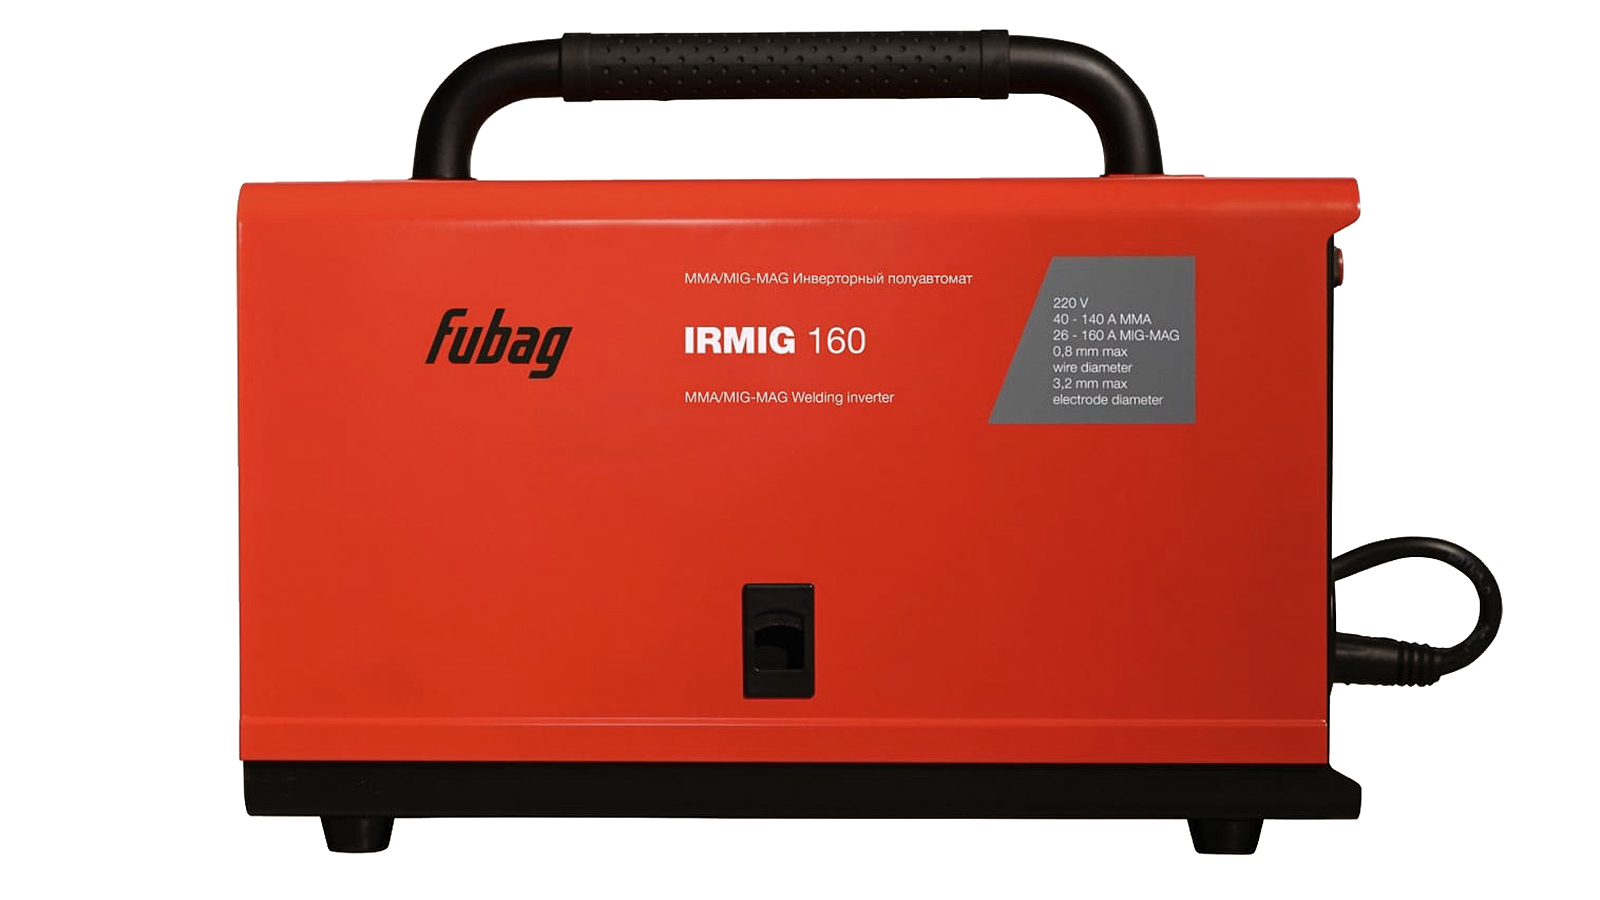 Аппарат сварочный Fubag IRMIG 160 инвертор полуавтомат фотография №4